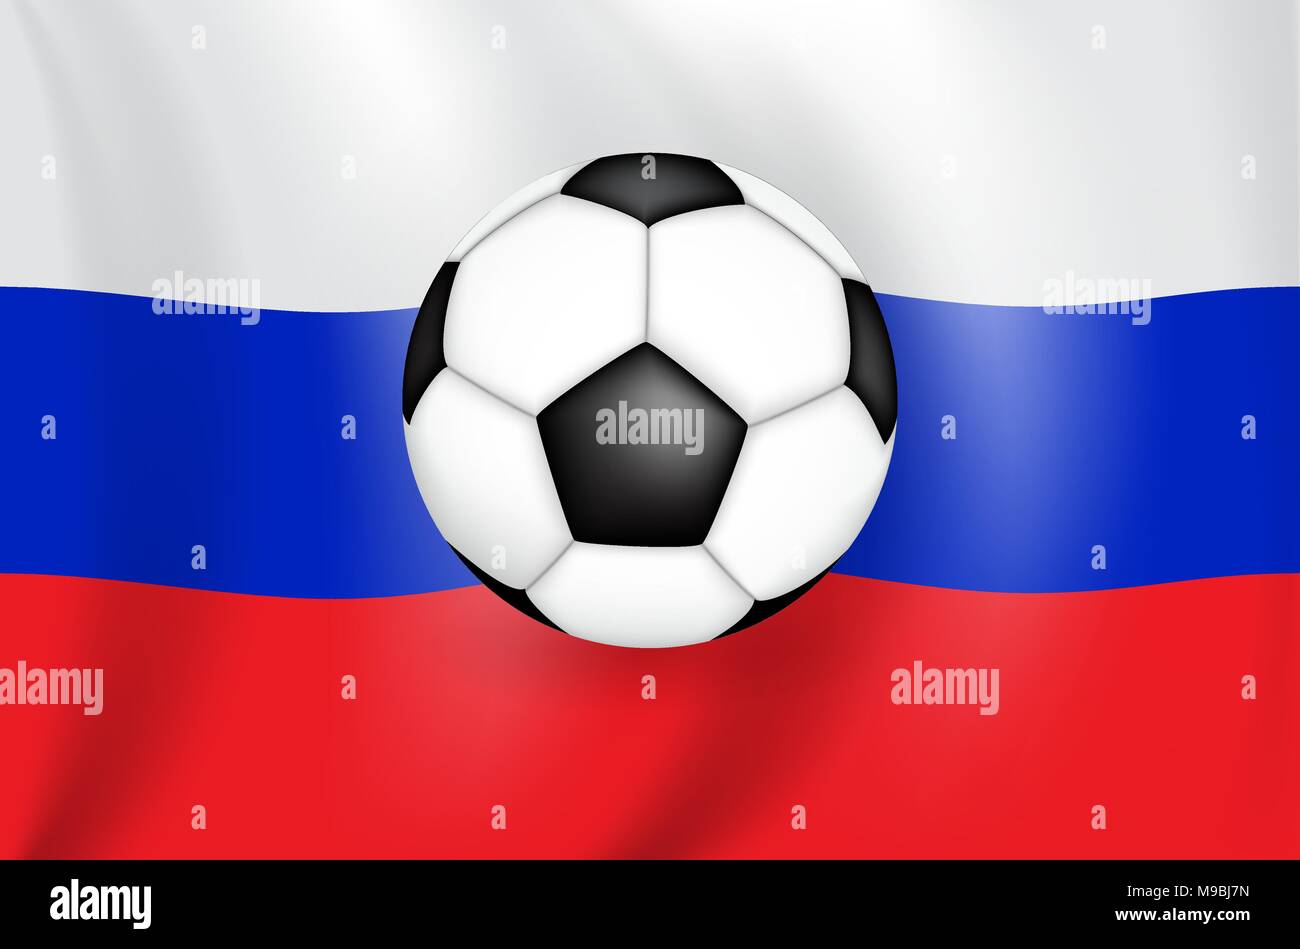 Realistische 3D-zeichnung Flagge (weiß-blau-rot) der Russischen Föderation (Russland) mit einem Fußball der schwarzen und weißen Farbe. Vector Illustration Stock Vektor